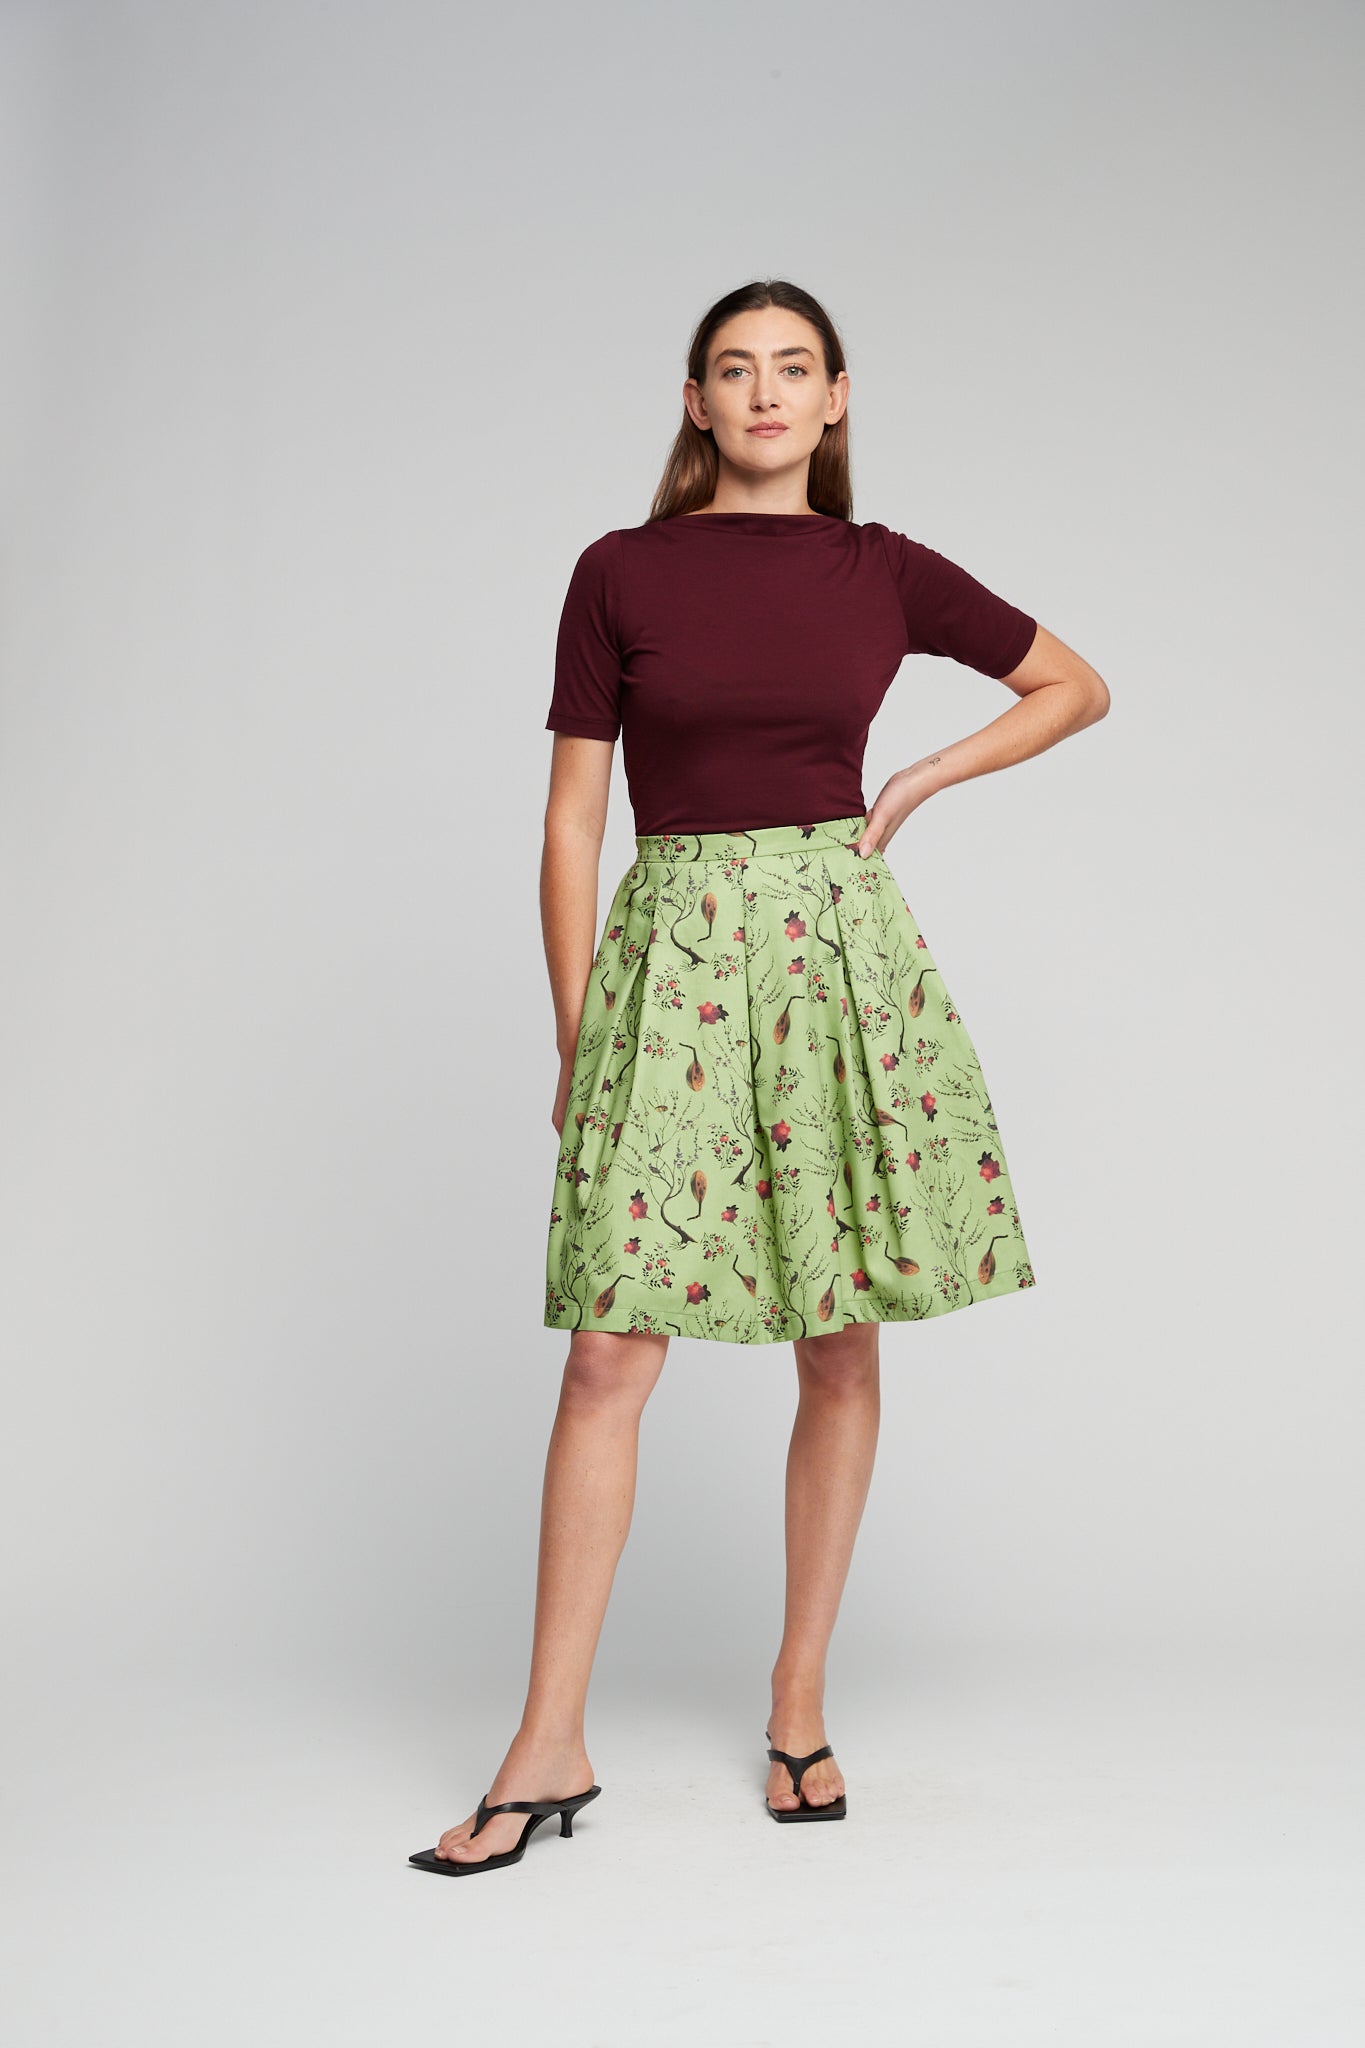 Spring skirt